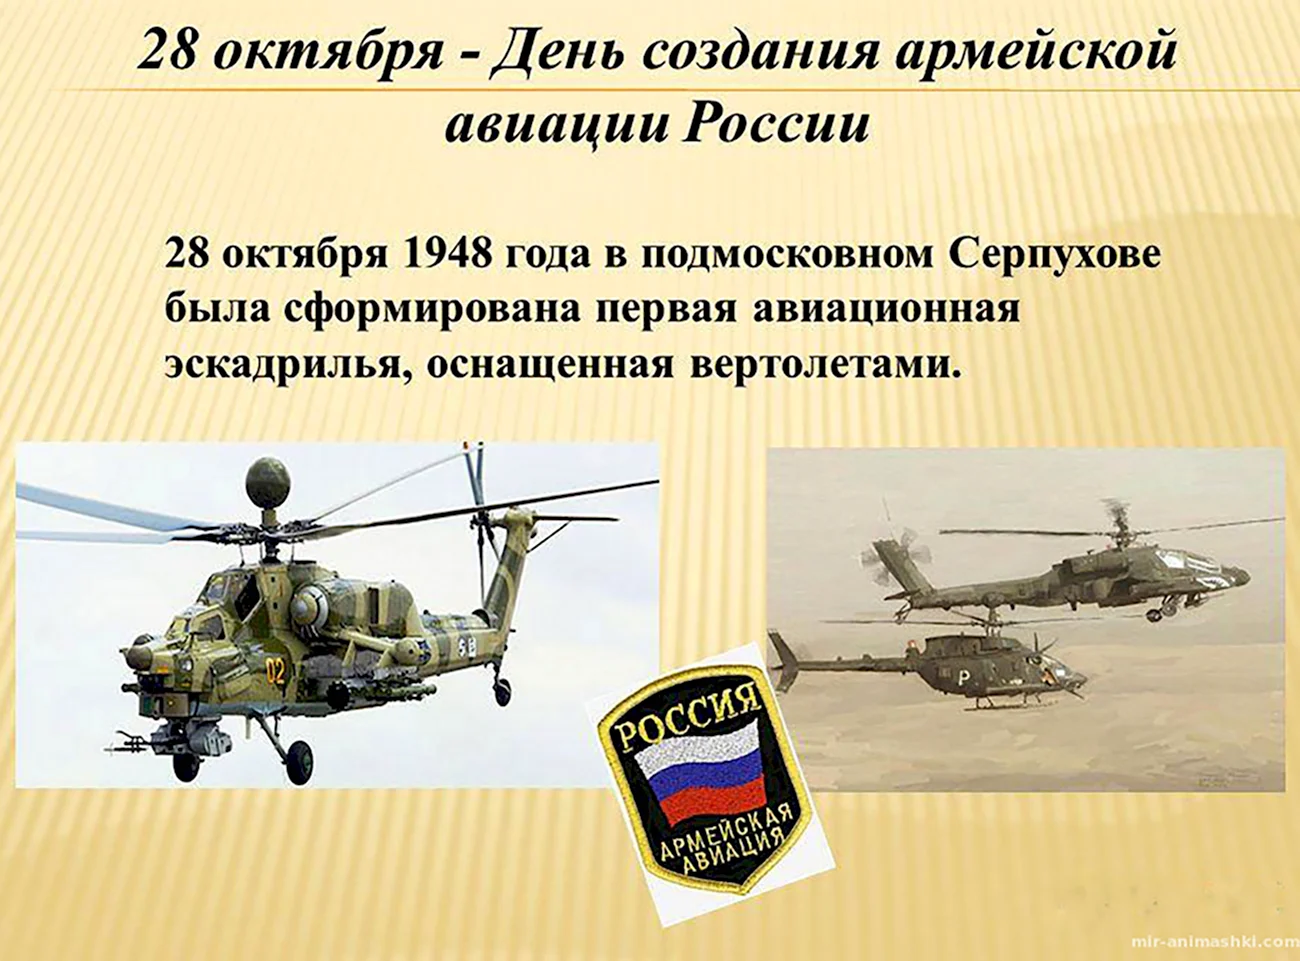 28 Октября день армейской авиации РФ. Поздравление